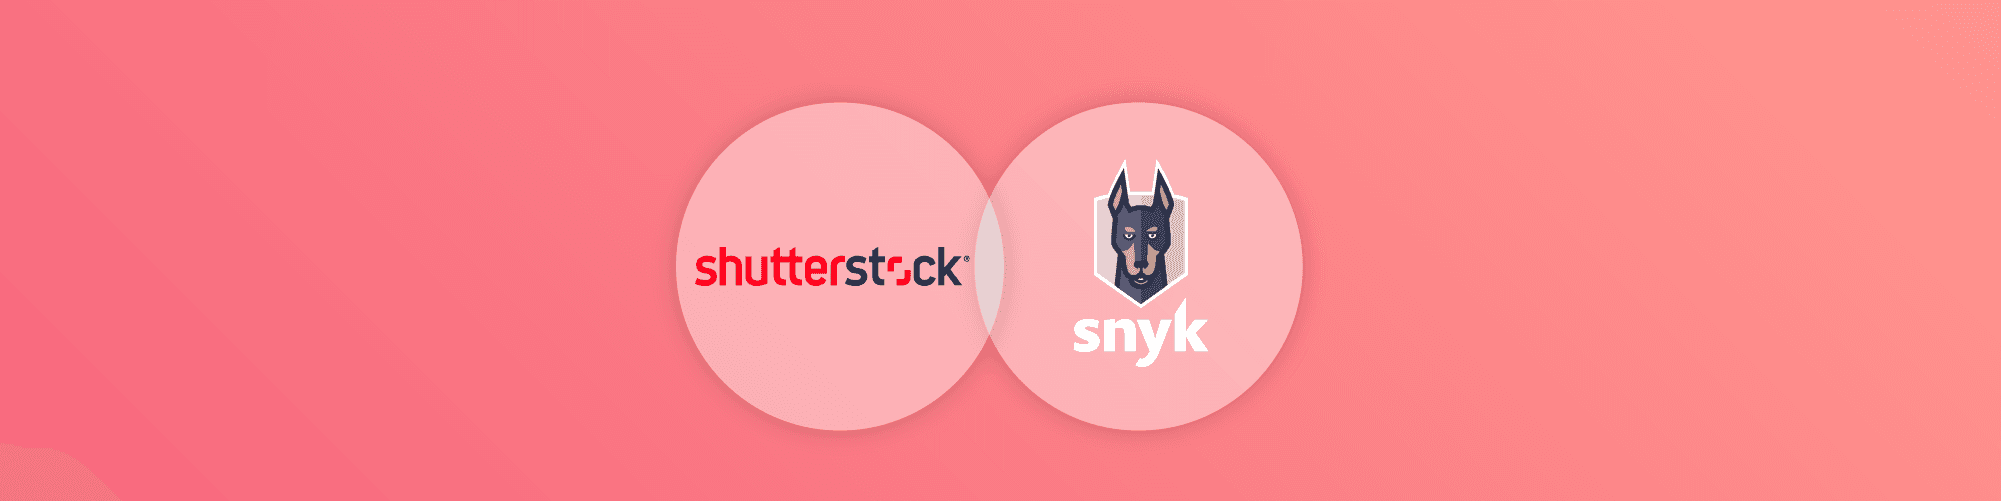 wordpress-sync/blog-banner-snyk-shutterstock